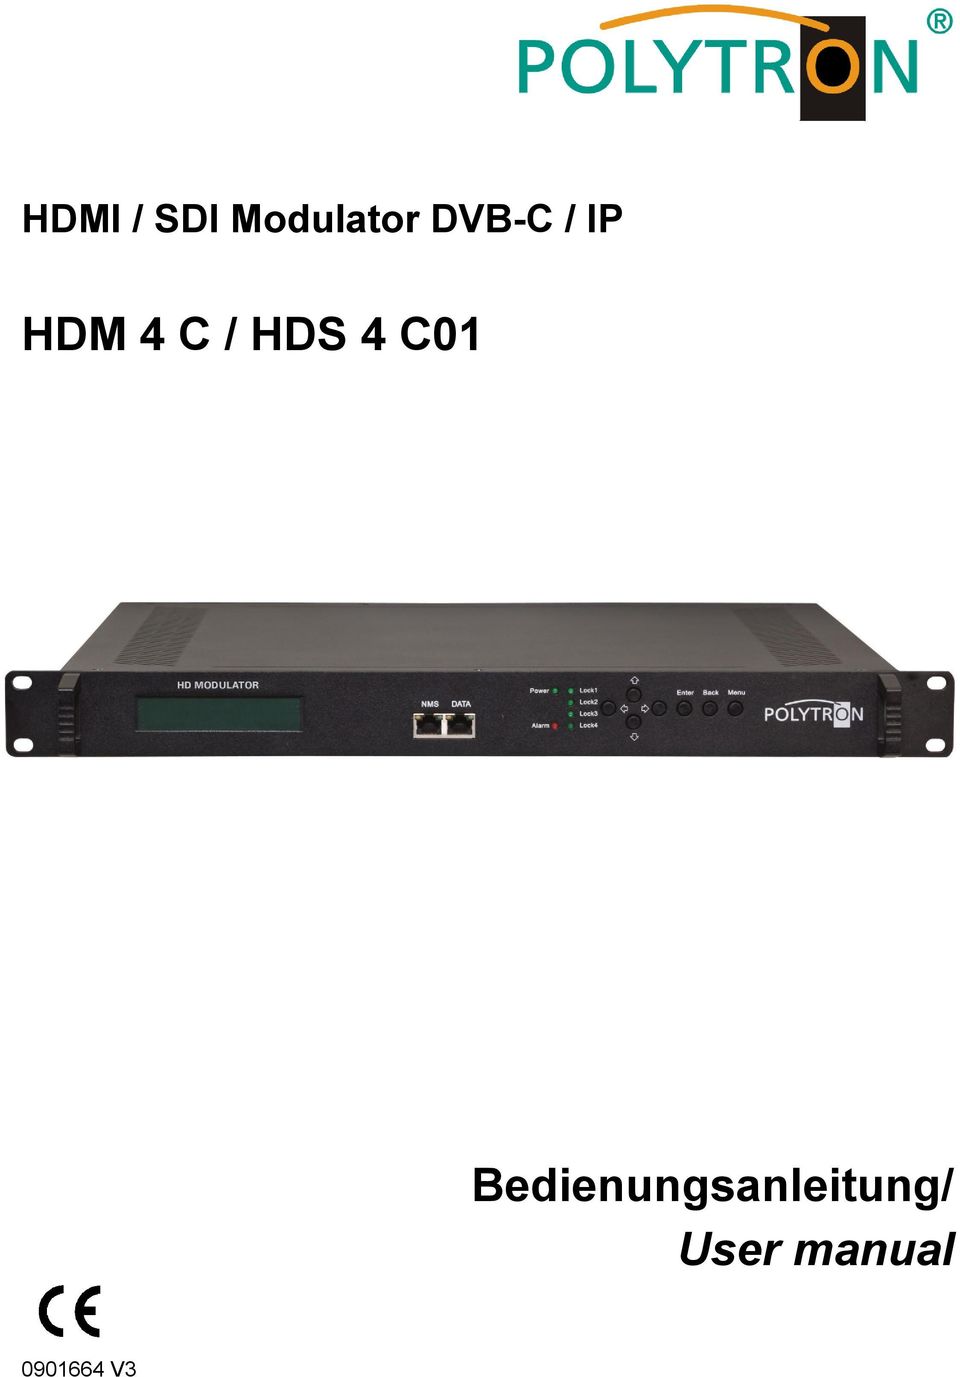 HDS 4 C01